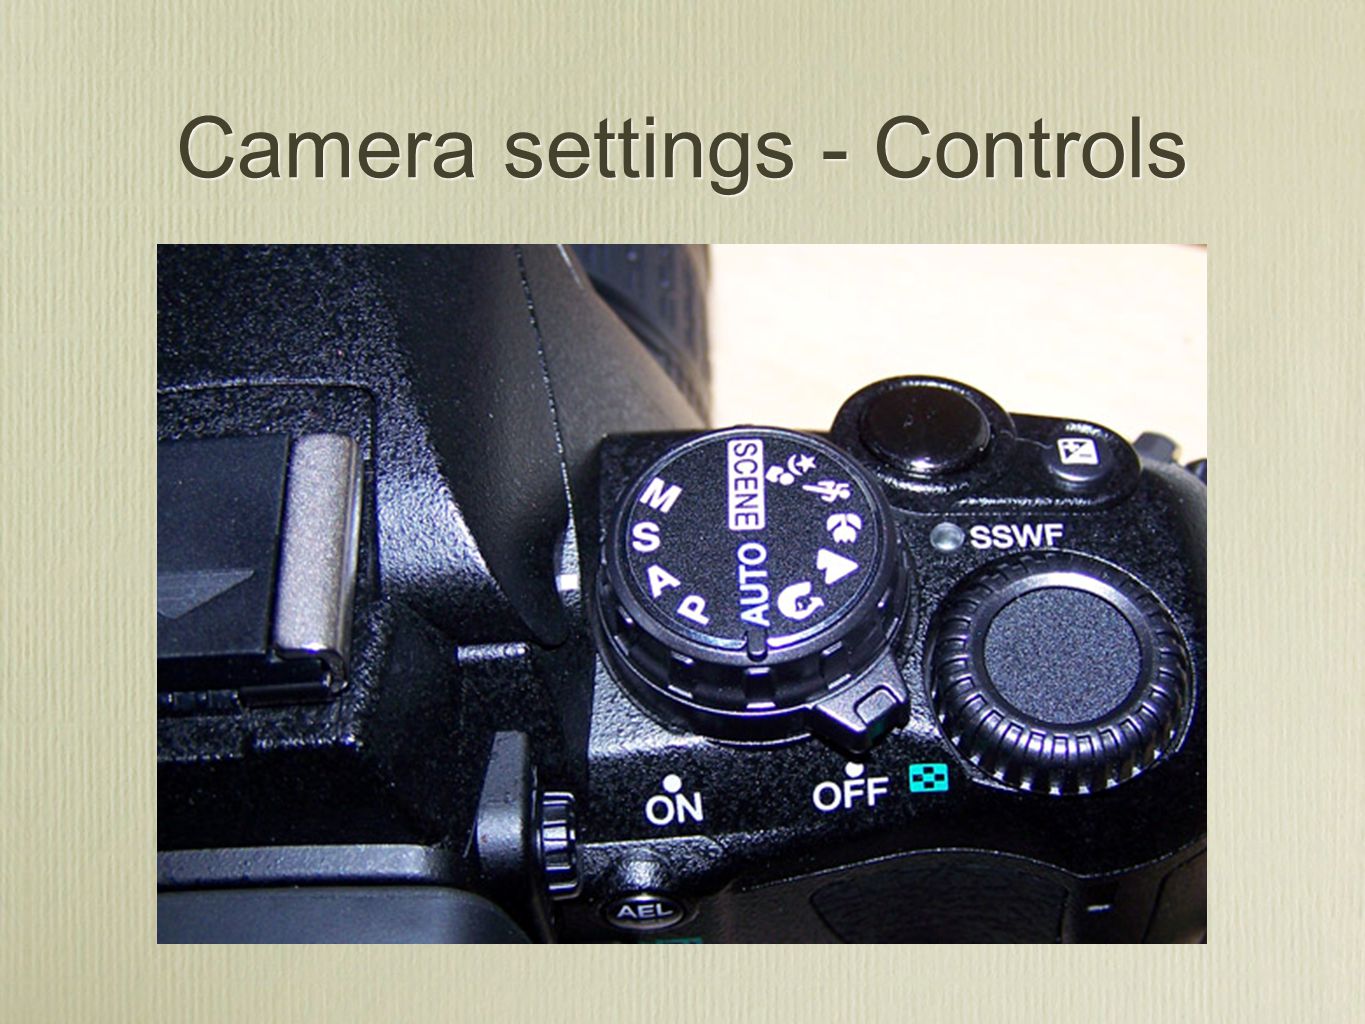 Camera settings - Controls